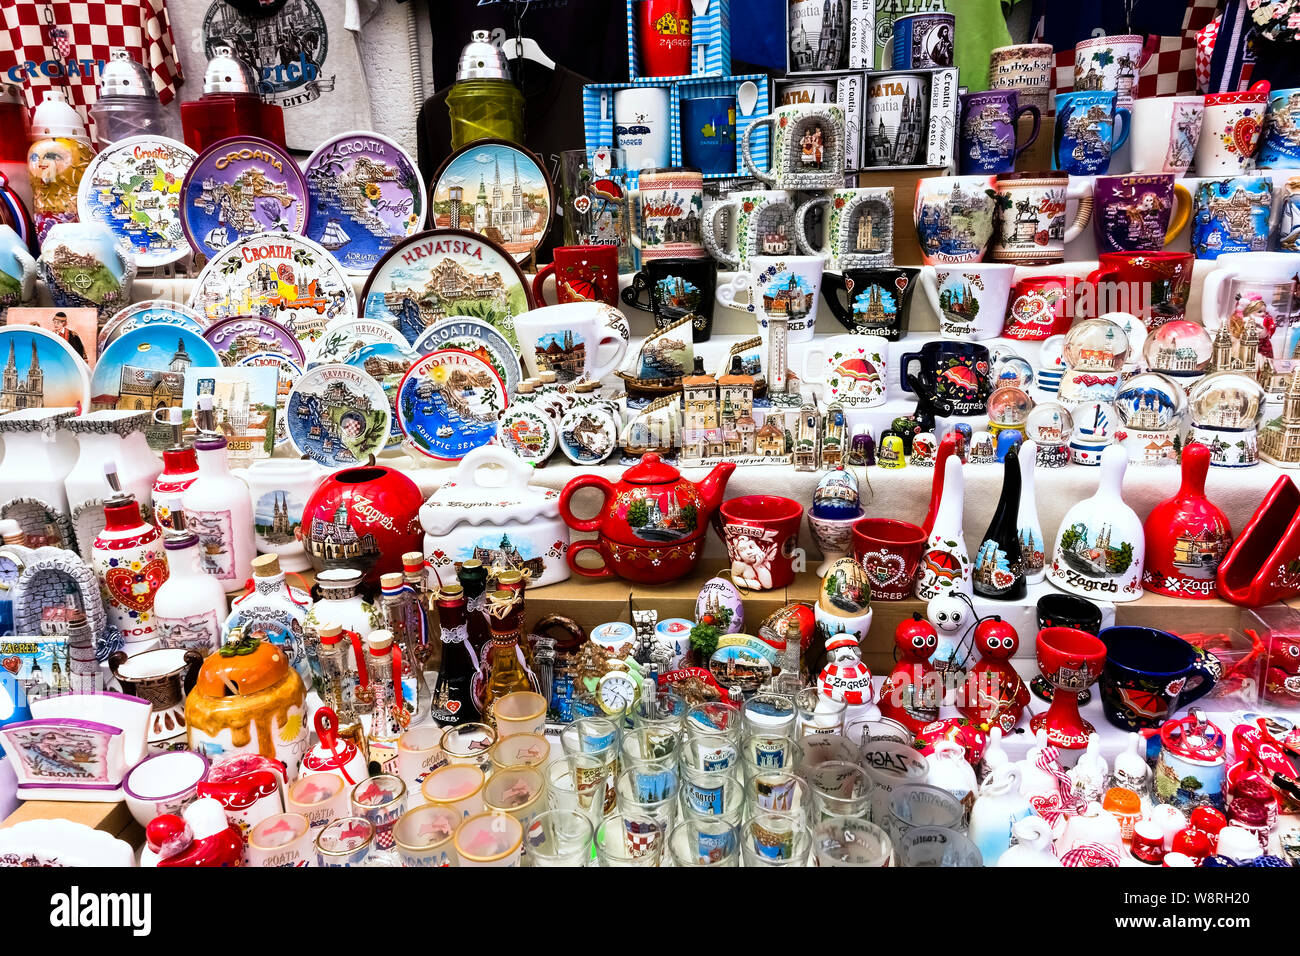 Touristische Einkaufsmöglichkeiten, kroatische Souvenirs auf dem Display an einem Stand. Zagreb, Kroatien, Europa, EU. Stockfoto